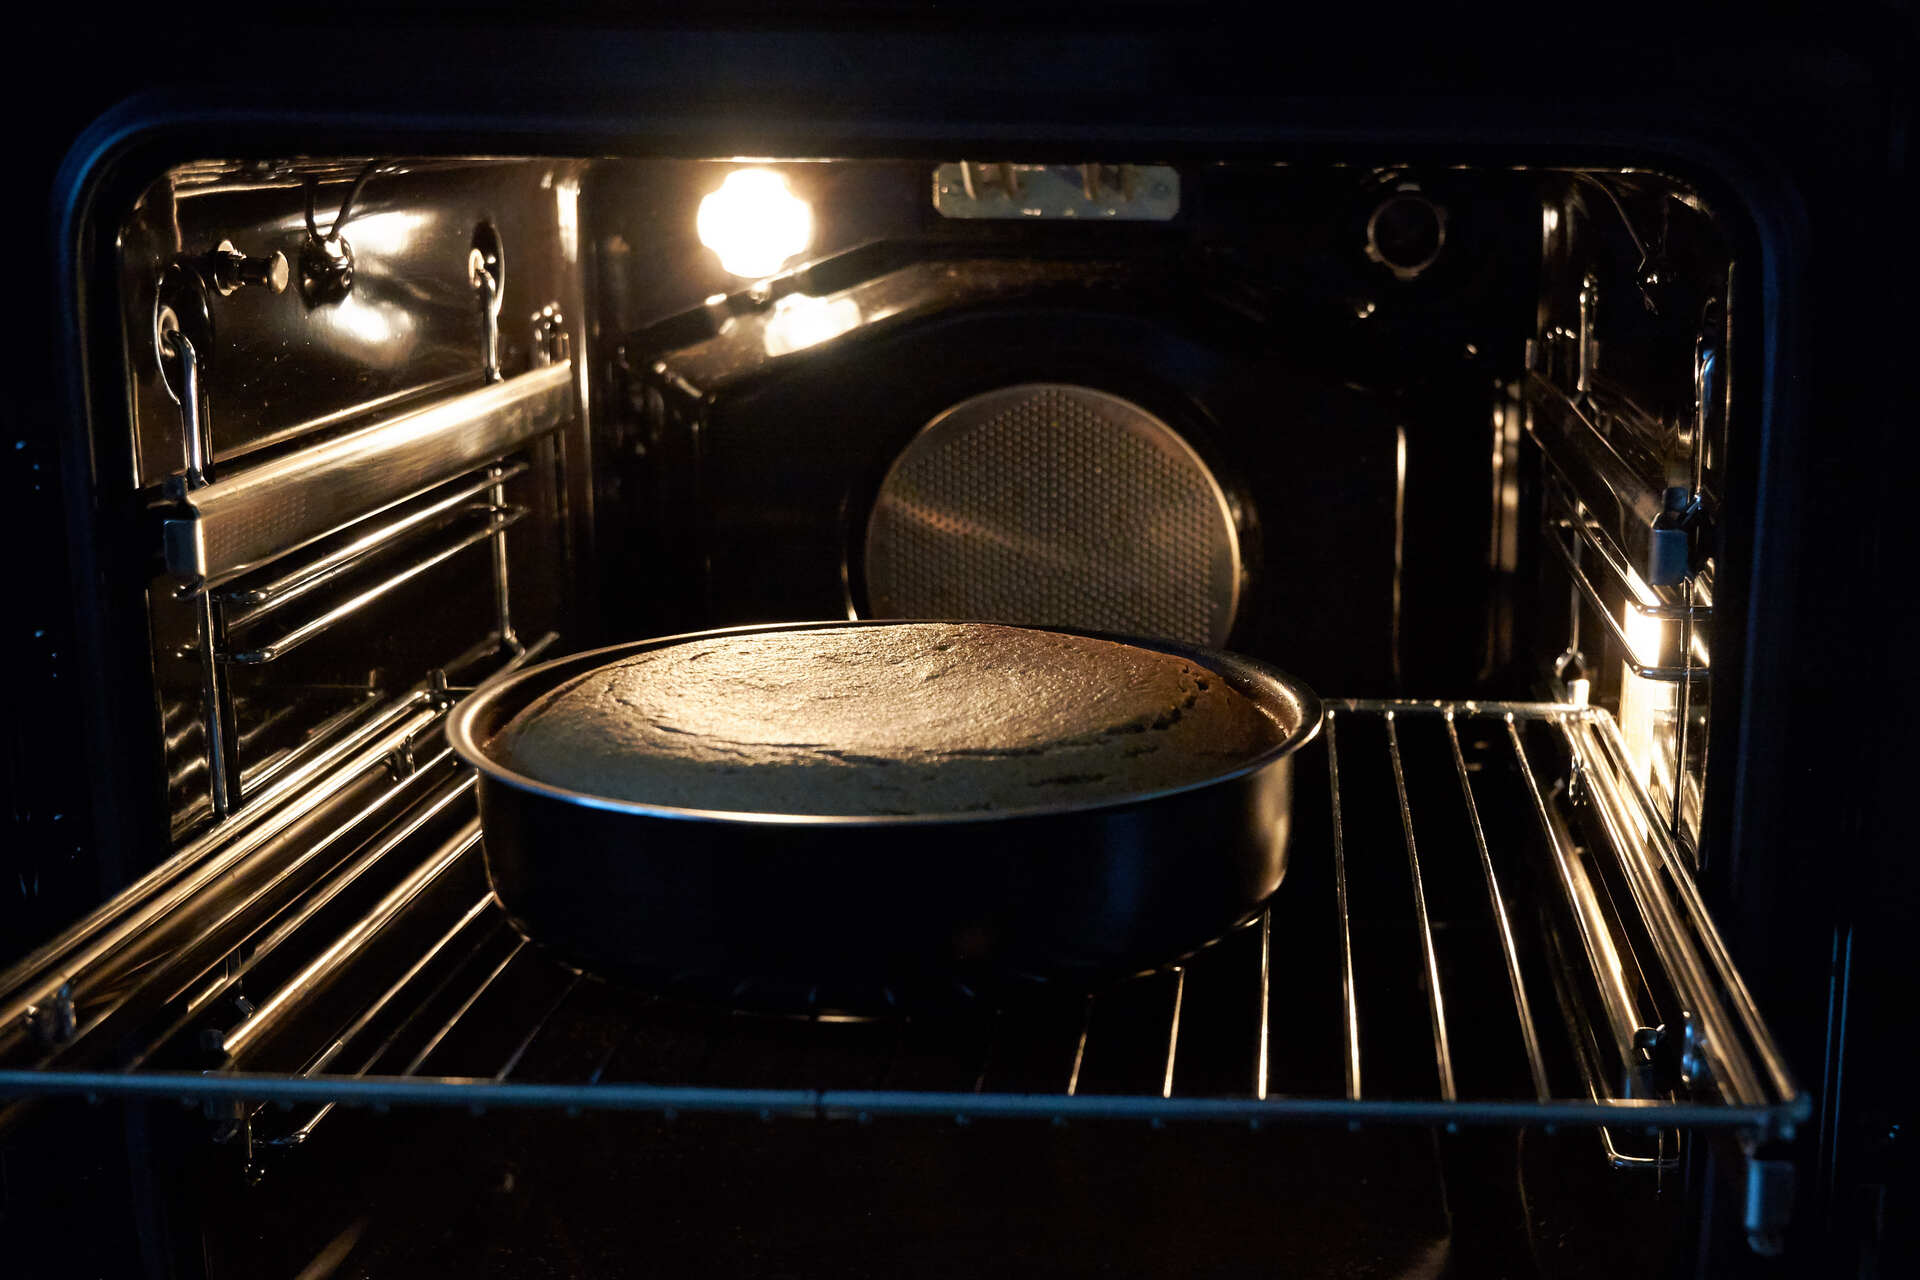 In questa immagine è visibile un forno in cui si sta cuocendo una torta